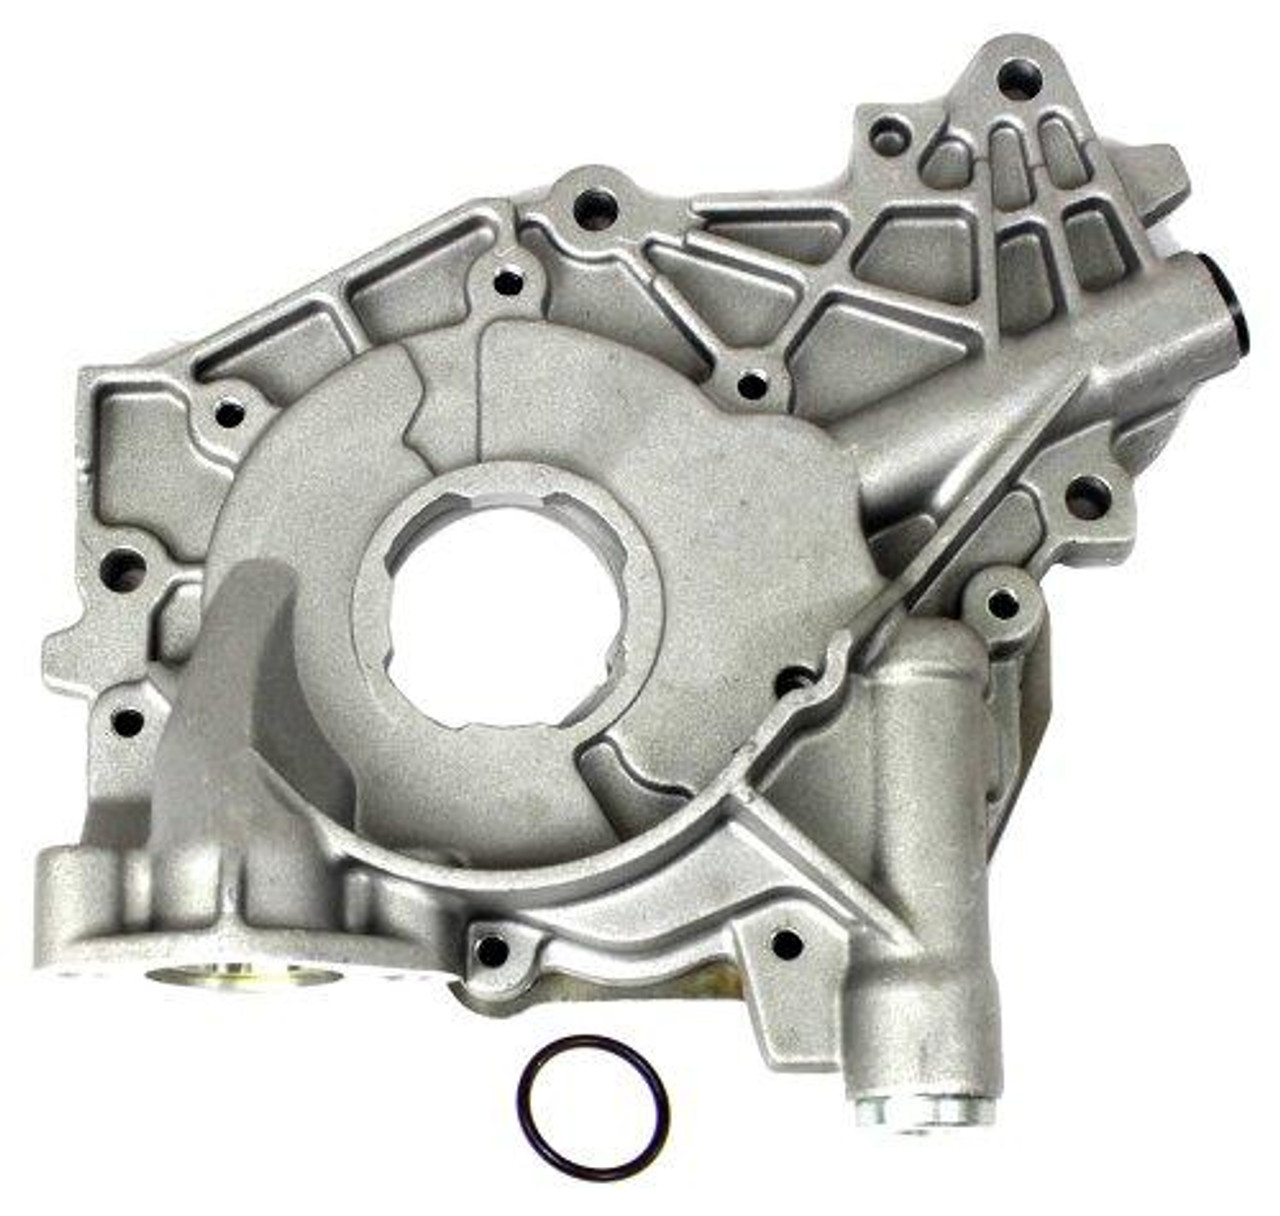 Oil Pump - 2010 Mazda Tribute 3.0L Engine Parts # OP411ZE56